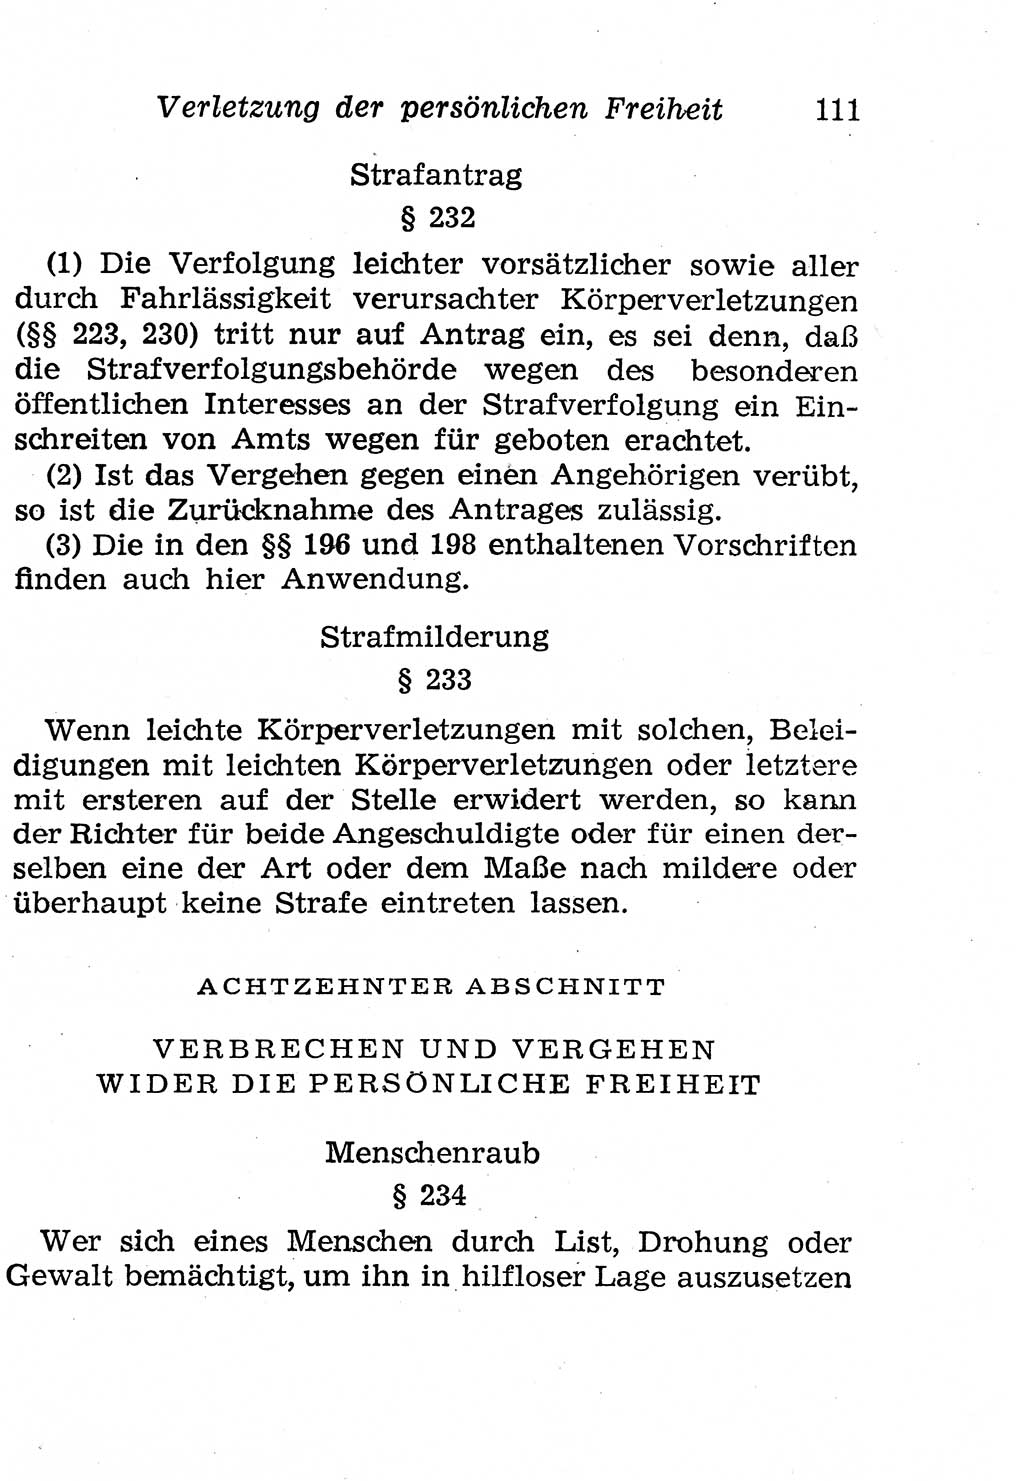 Strafgesetzbuch (StGB) und andere Strafgesetze [Deutsche Demokratische Republik (DDR)] 1958, Seite 111 (StGB Strafges. DDR 1958, S. 111)